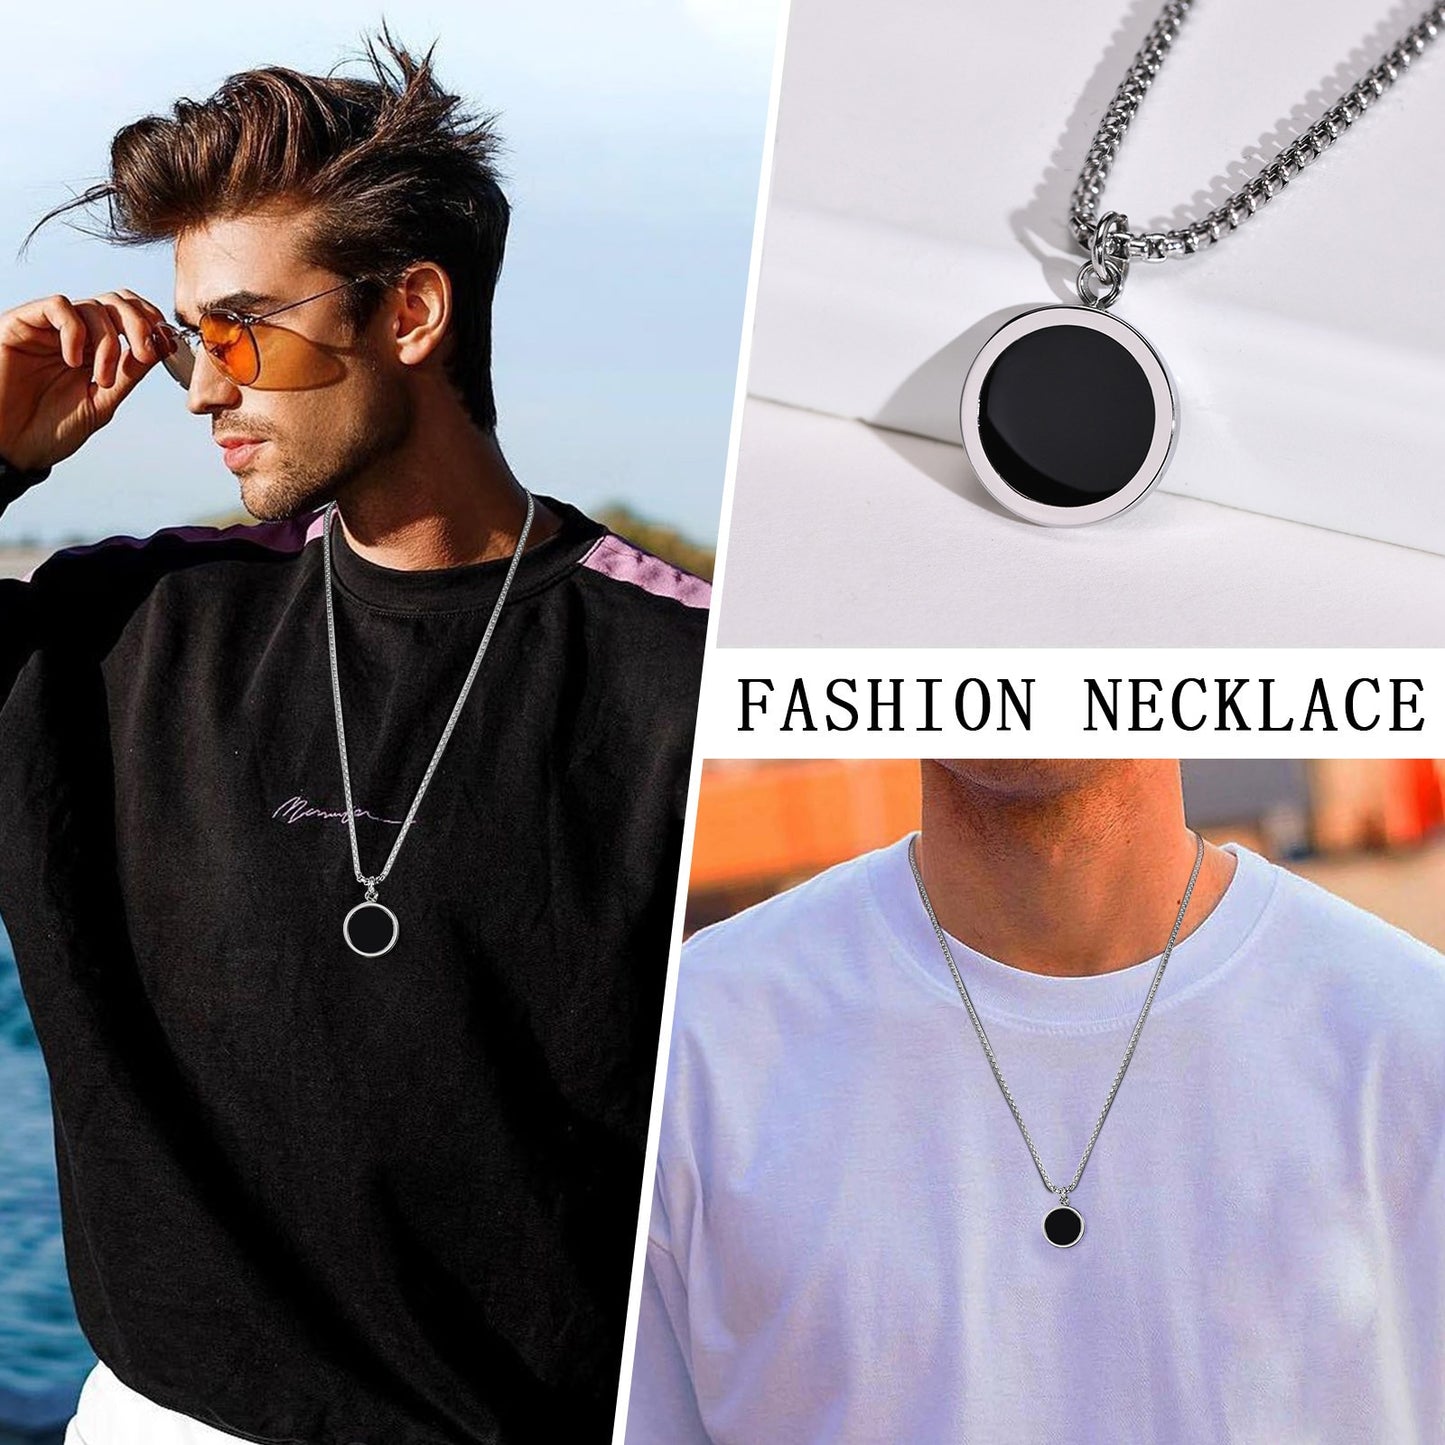 Pendiente y Collar para Hombre Necklaces for Men round pendant fashion